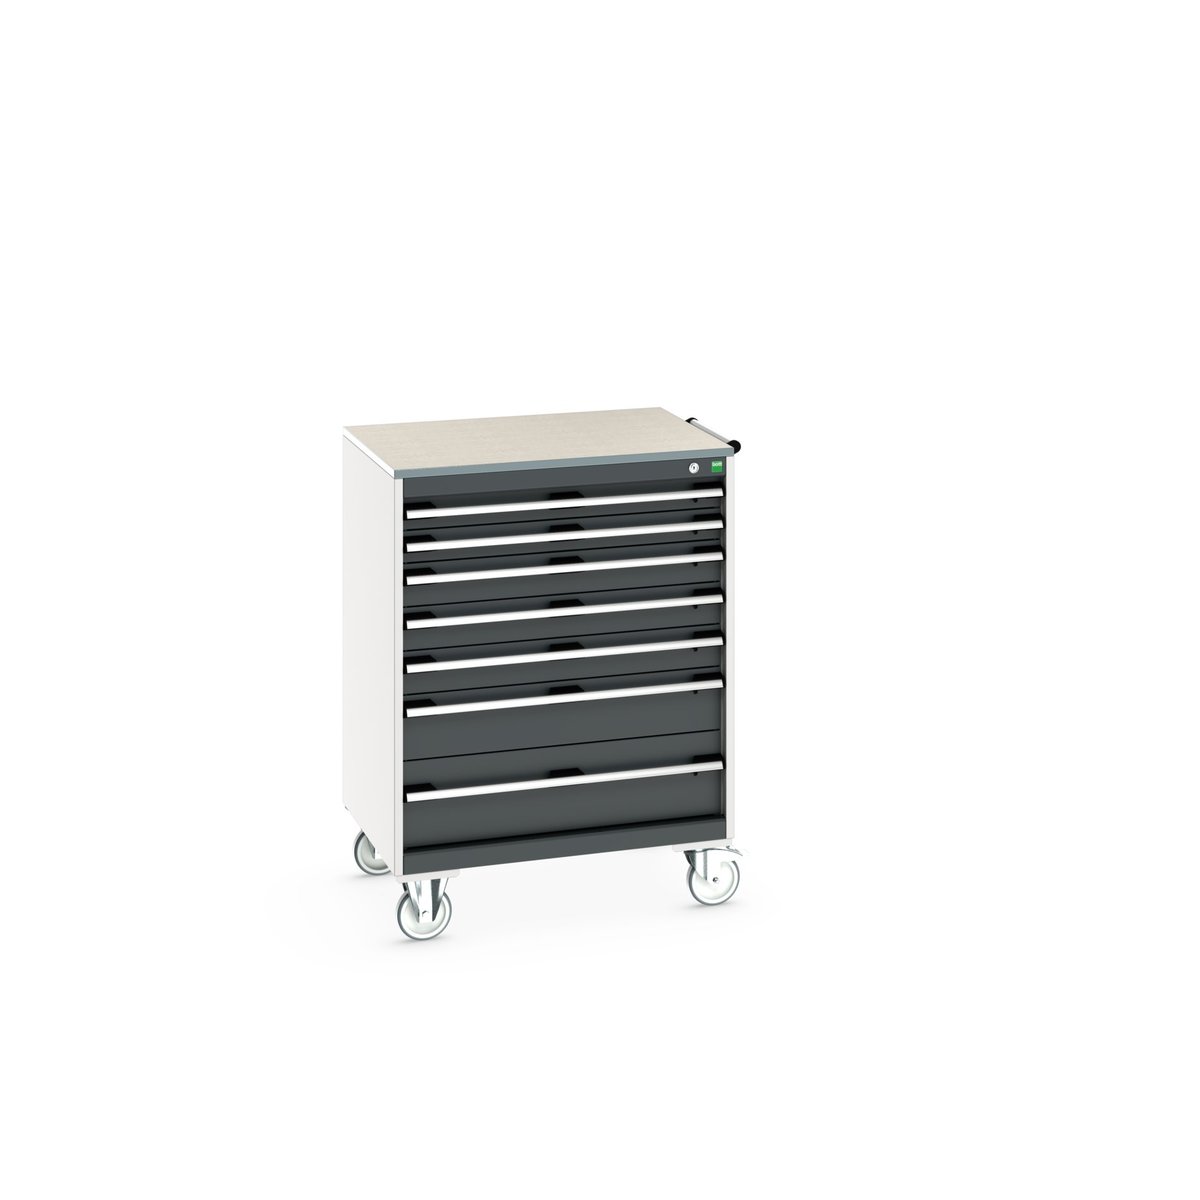 40402162. - cubio mobile cabinet